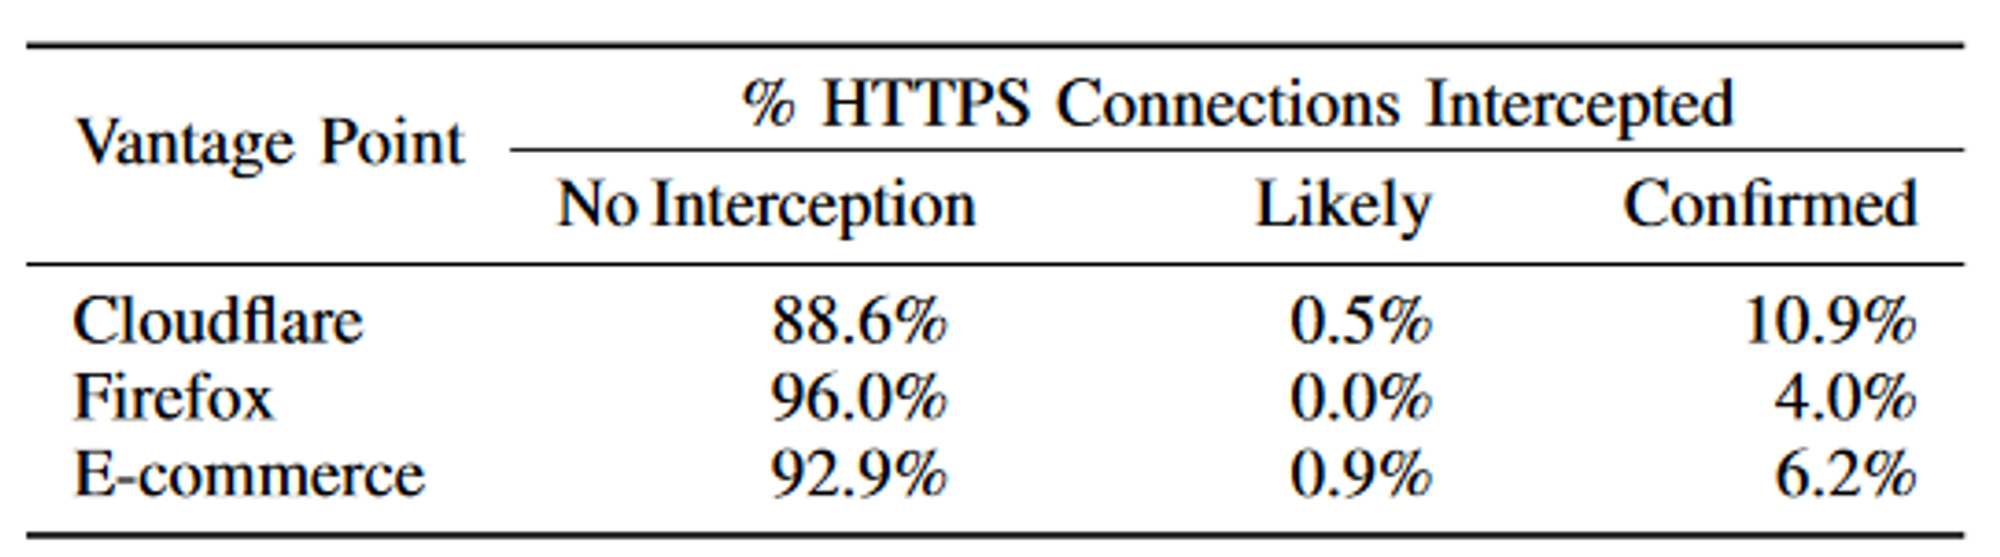 Andelen av HTTPS-forbindelser som blir avskåret, ifølge undersøkelsen som er nevnt i saken.